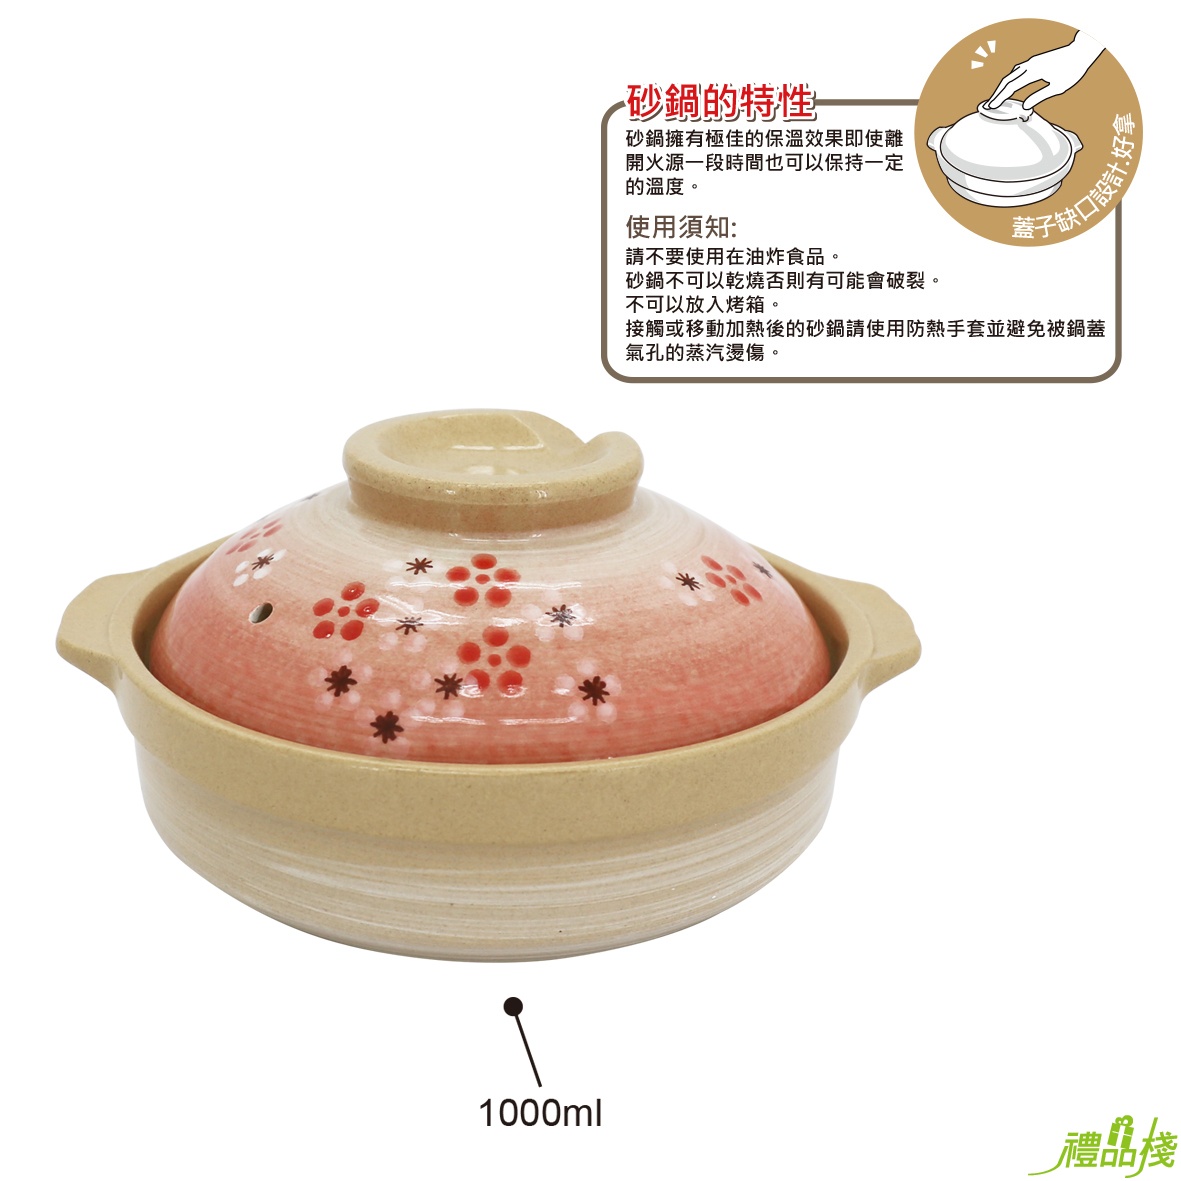 松村窯日式7.5吋砂鍋